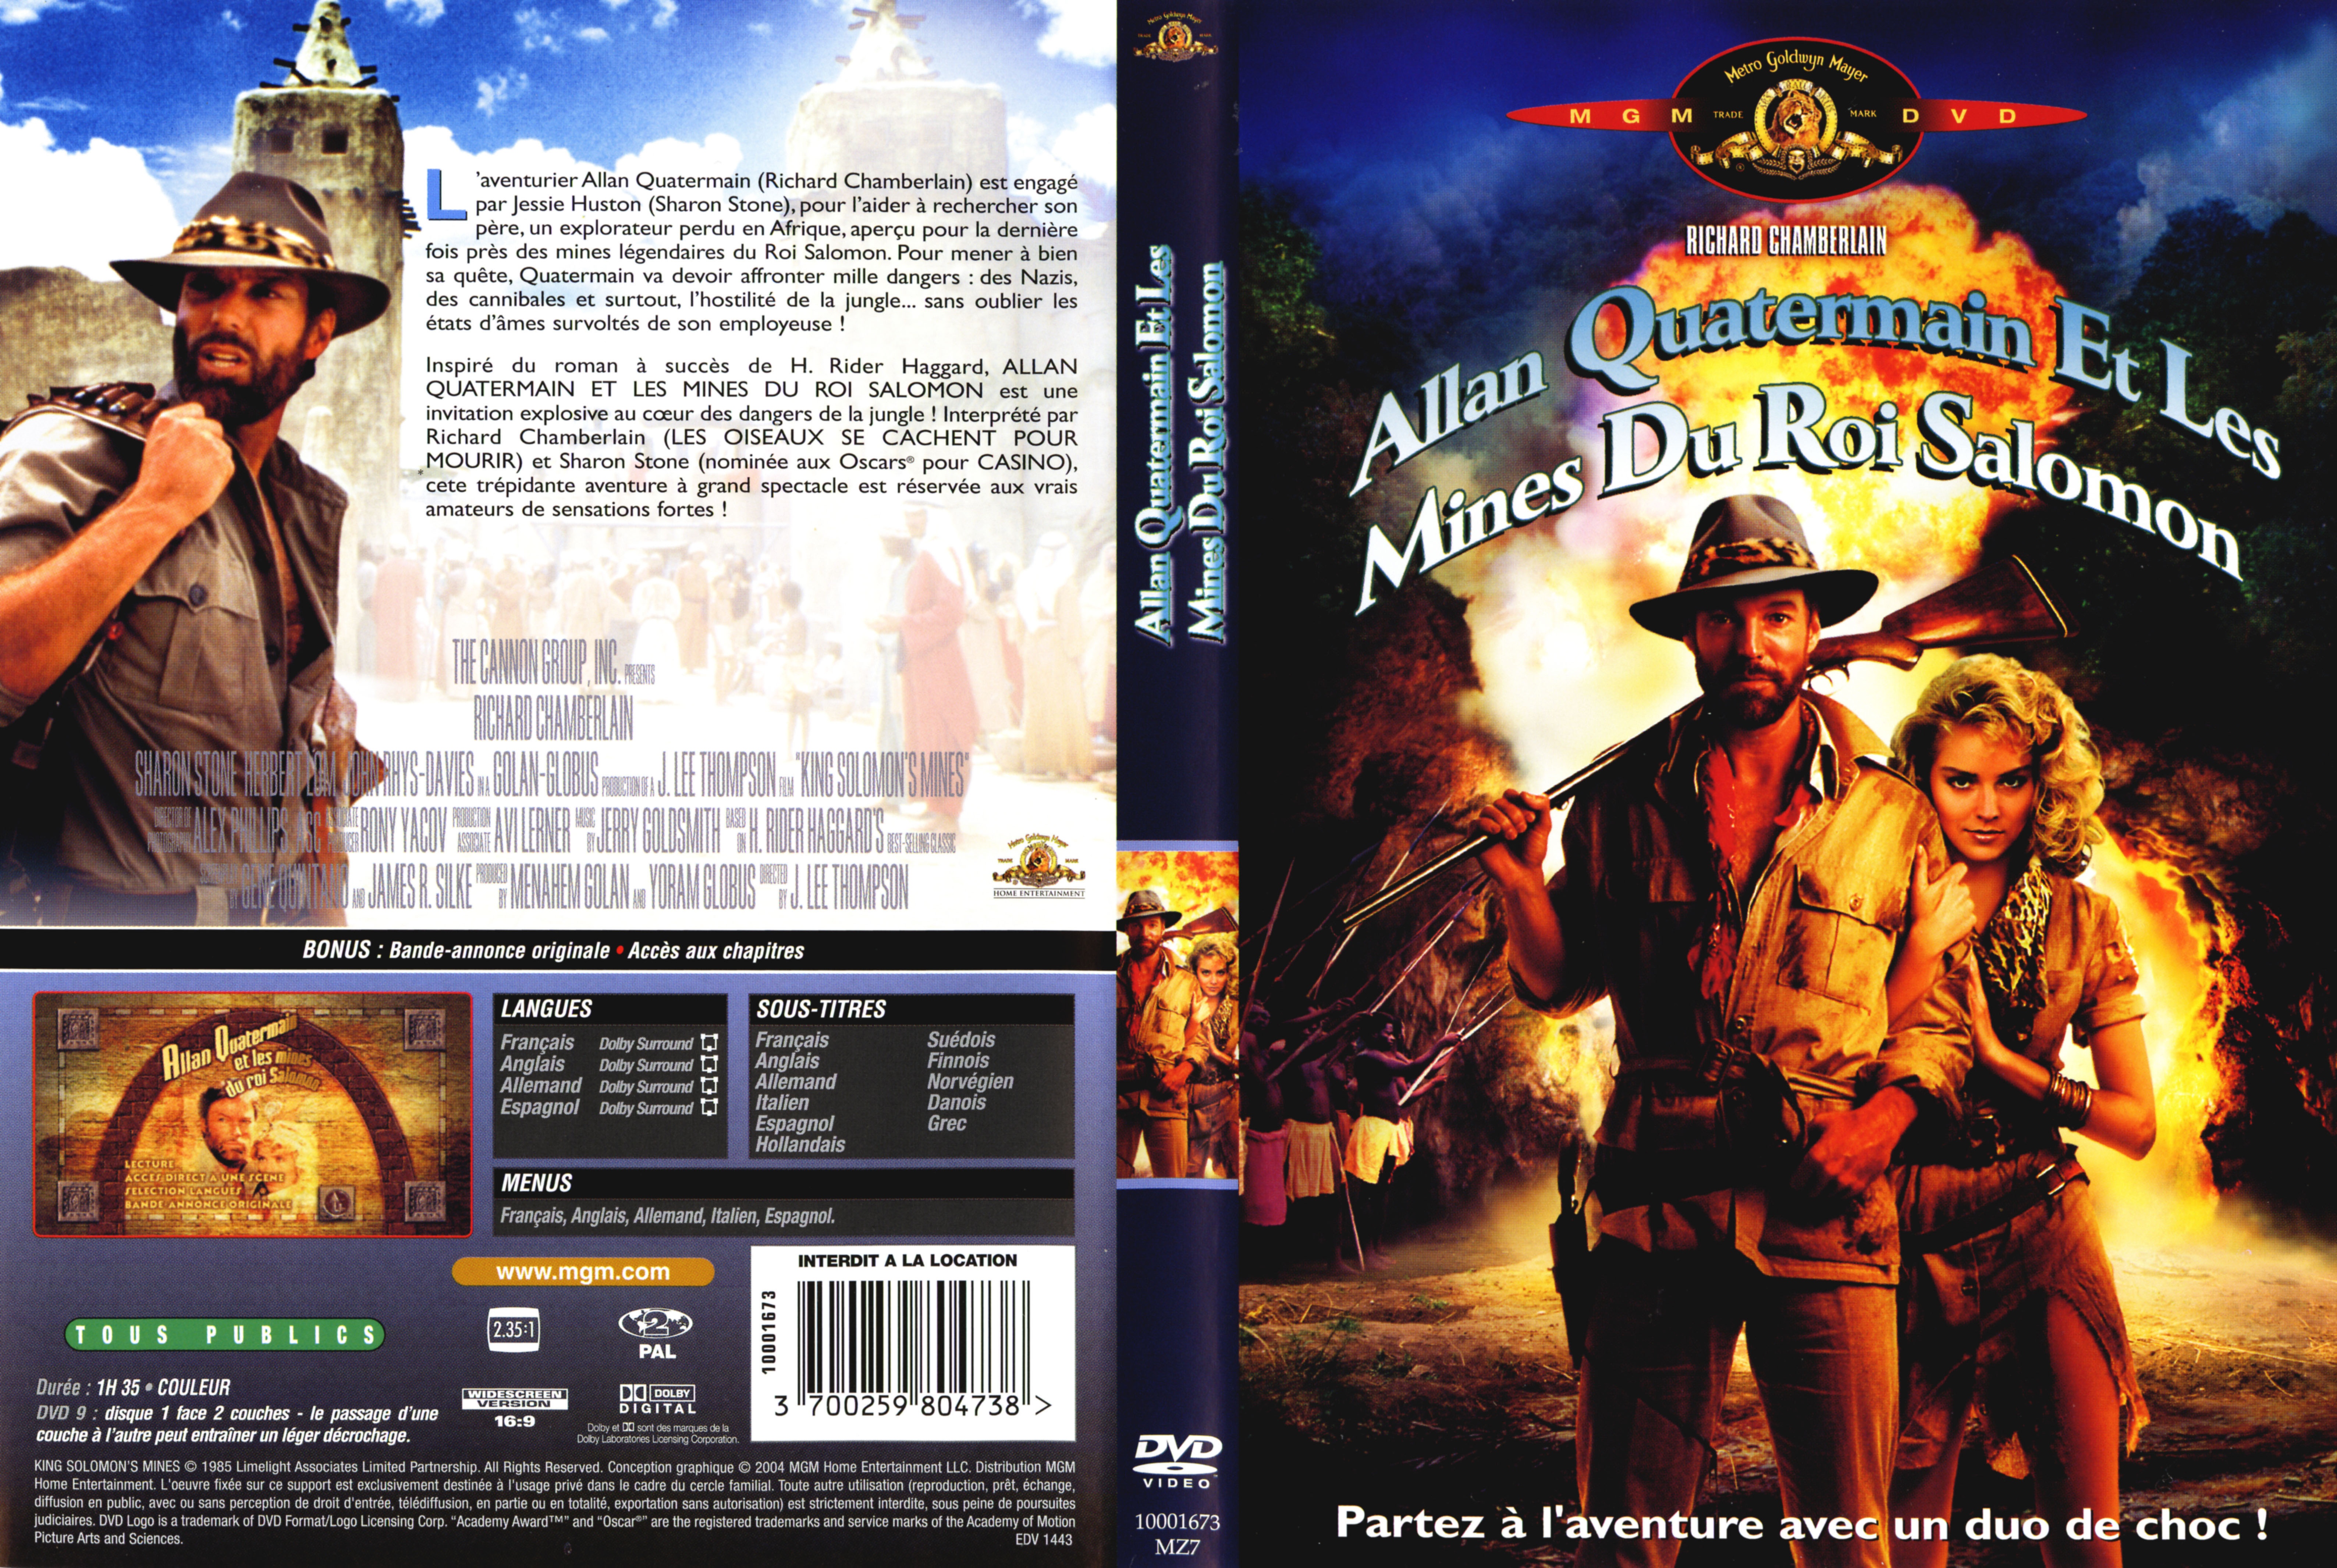 Jaquette DVD Allan Quatermain et les mines du roi salomon